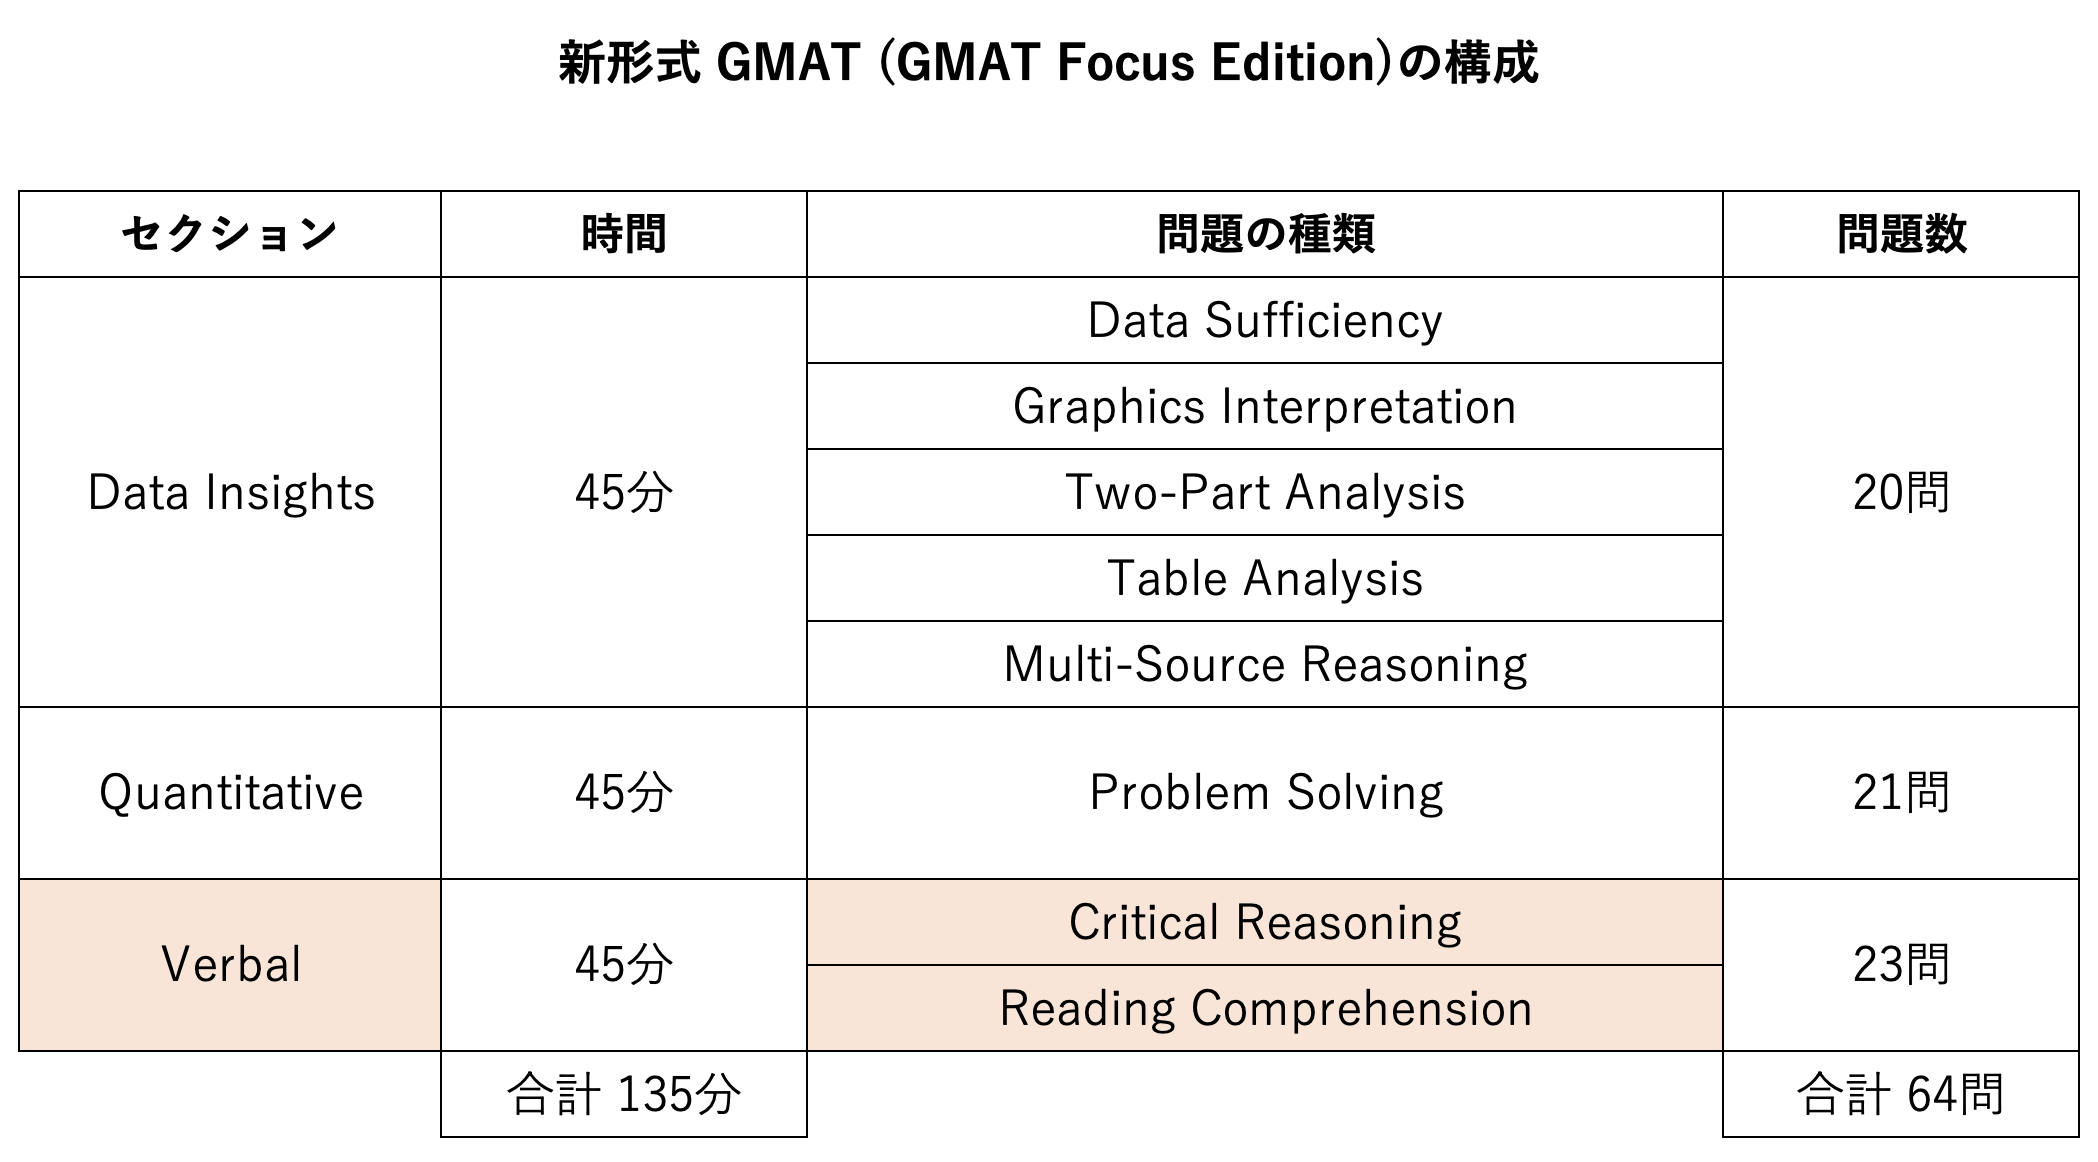 GMAT Focus Edition の構成